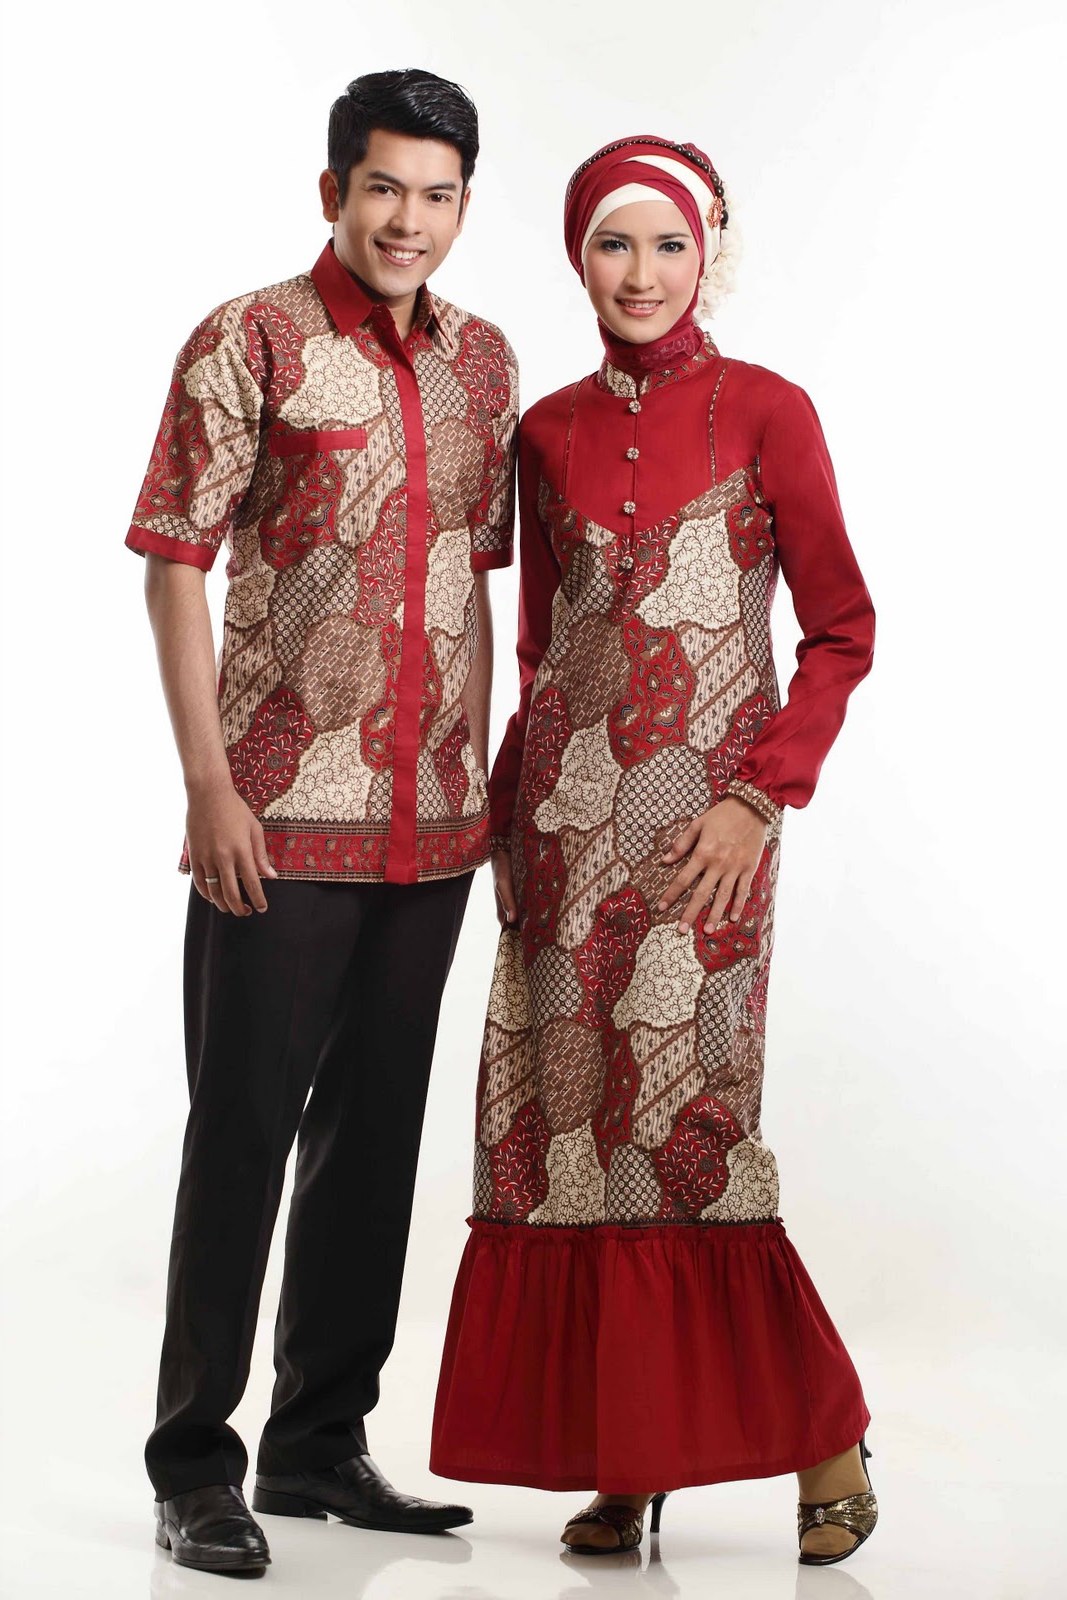 Bentuk Baju Lebaran Terbaru 0gdr Bintang anda Trend Model Baju Batik Lebaran Terbaru 2013